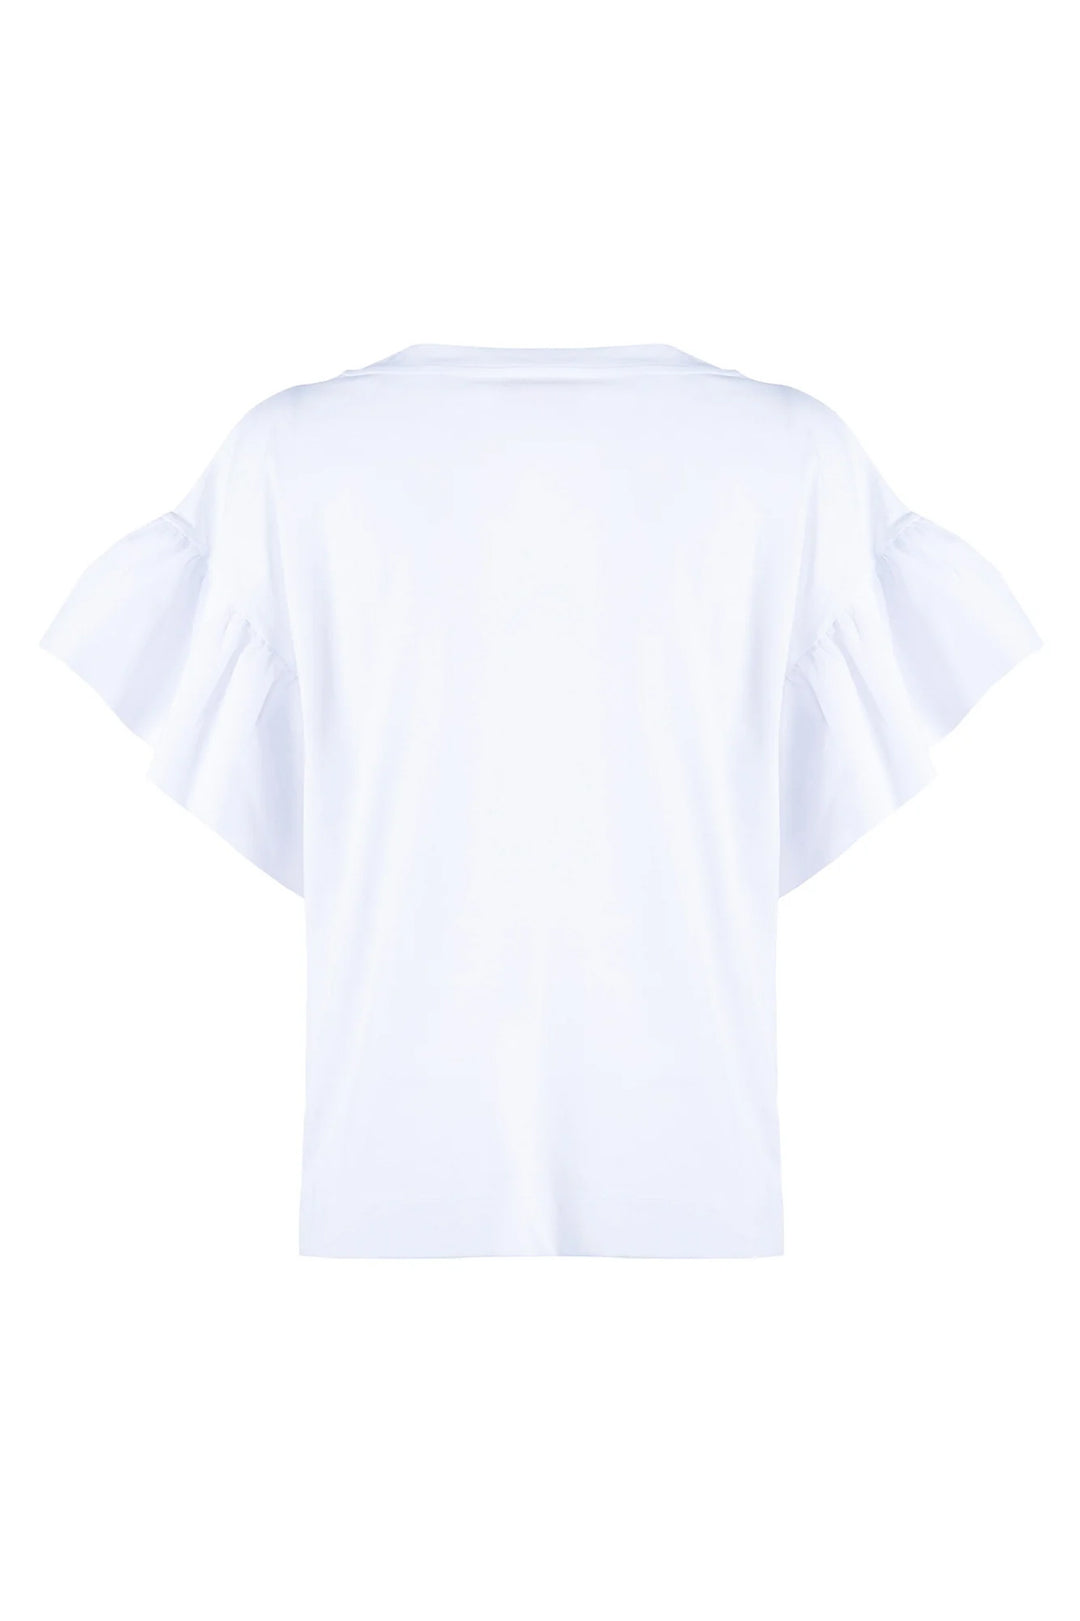 NENETTE T-shirt “DISK” bianca in cotone con maniche a volant e con stampa vespa - Mancinelli 1954